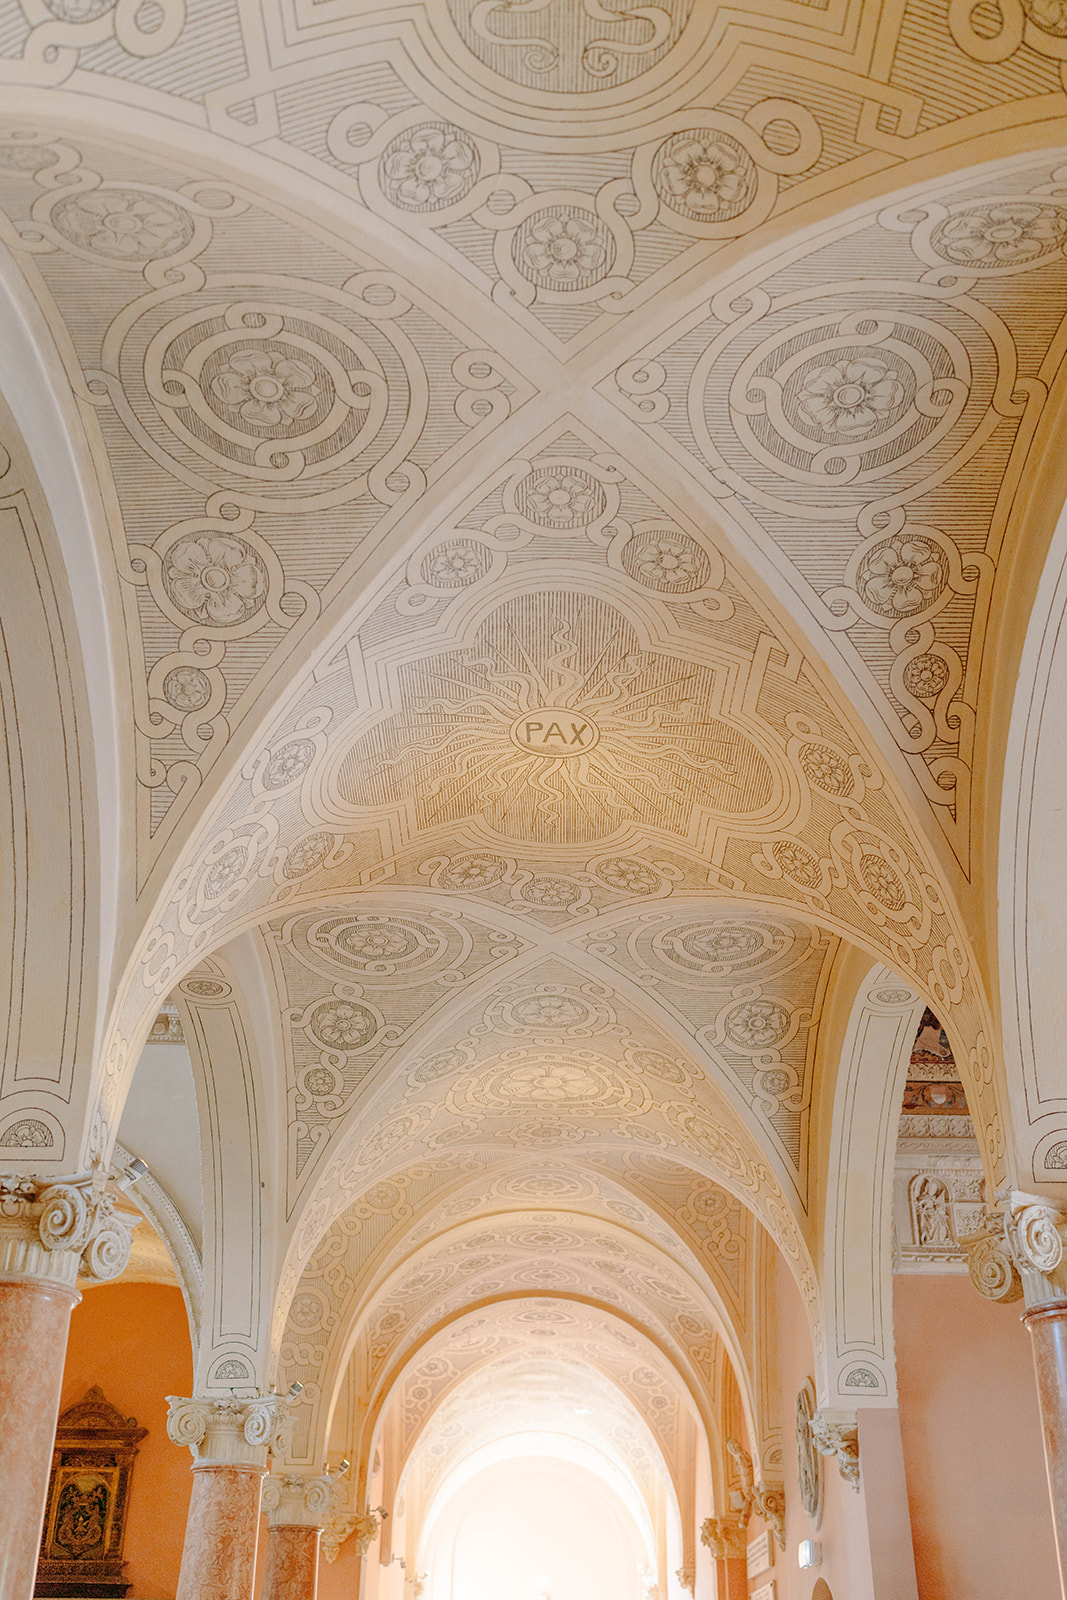 the ornate ceiling inside villa ephrussi